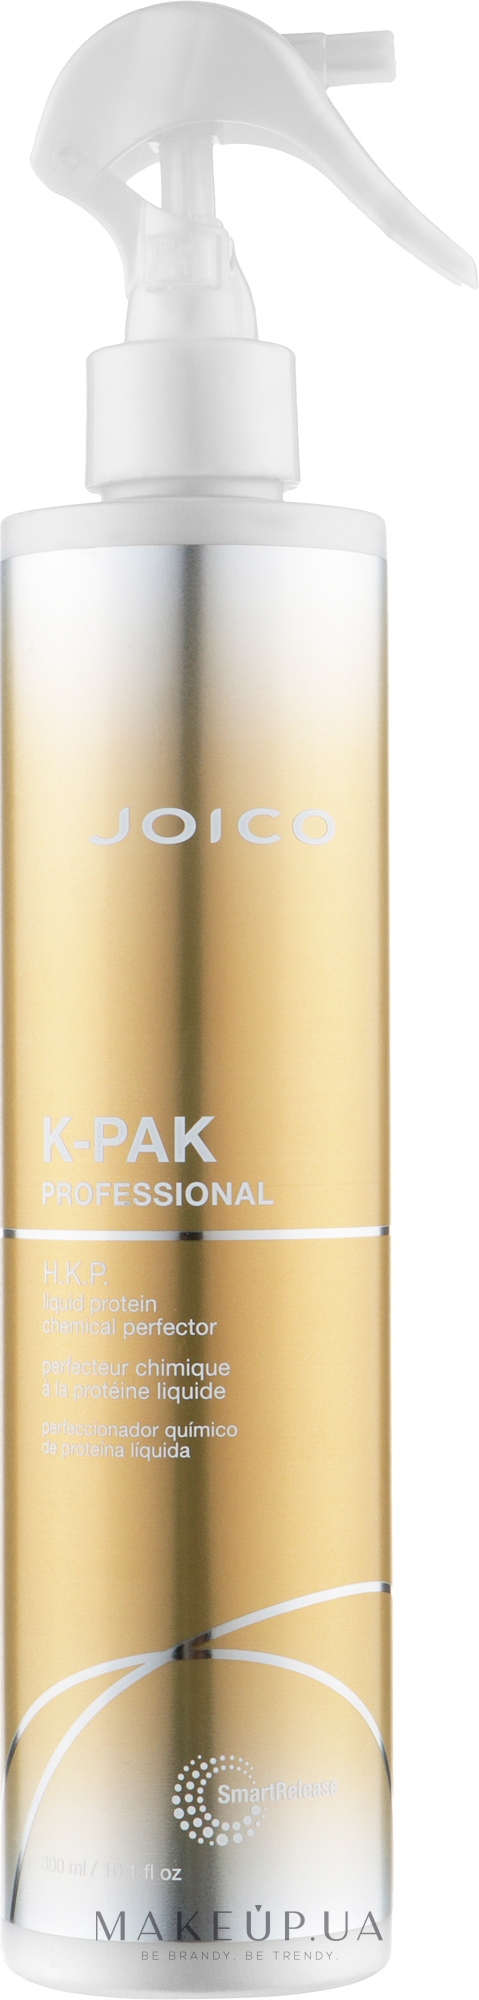 Протеїн рідкий для тонкого і пошкодженого волосся - Joico K-Pak Liquid Protein Chemical Perfector — фото 300ml